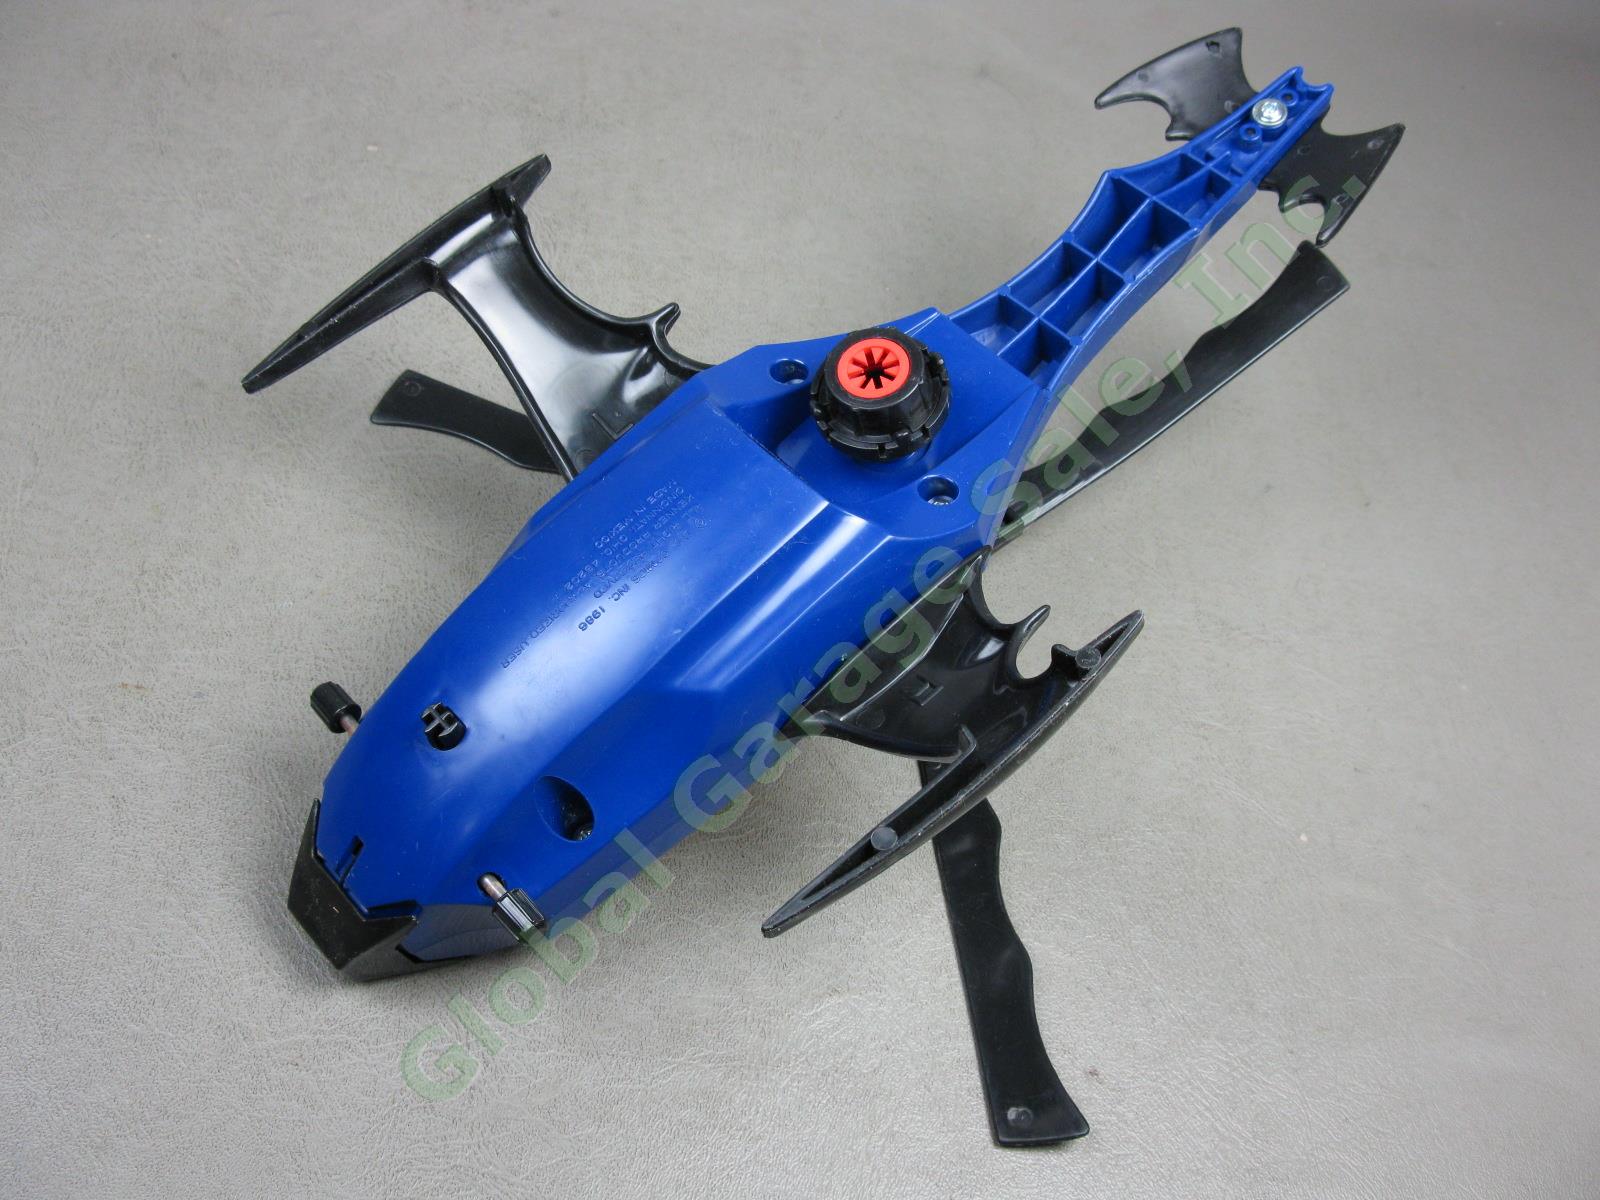 1986 Kenner Super Powers DC Comics Batman Batcopter Air-Pursuit Chopper Vehicle 6